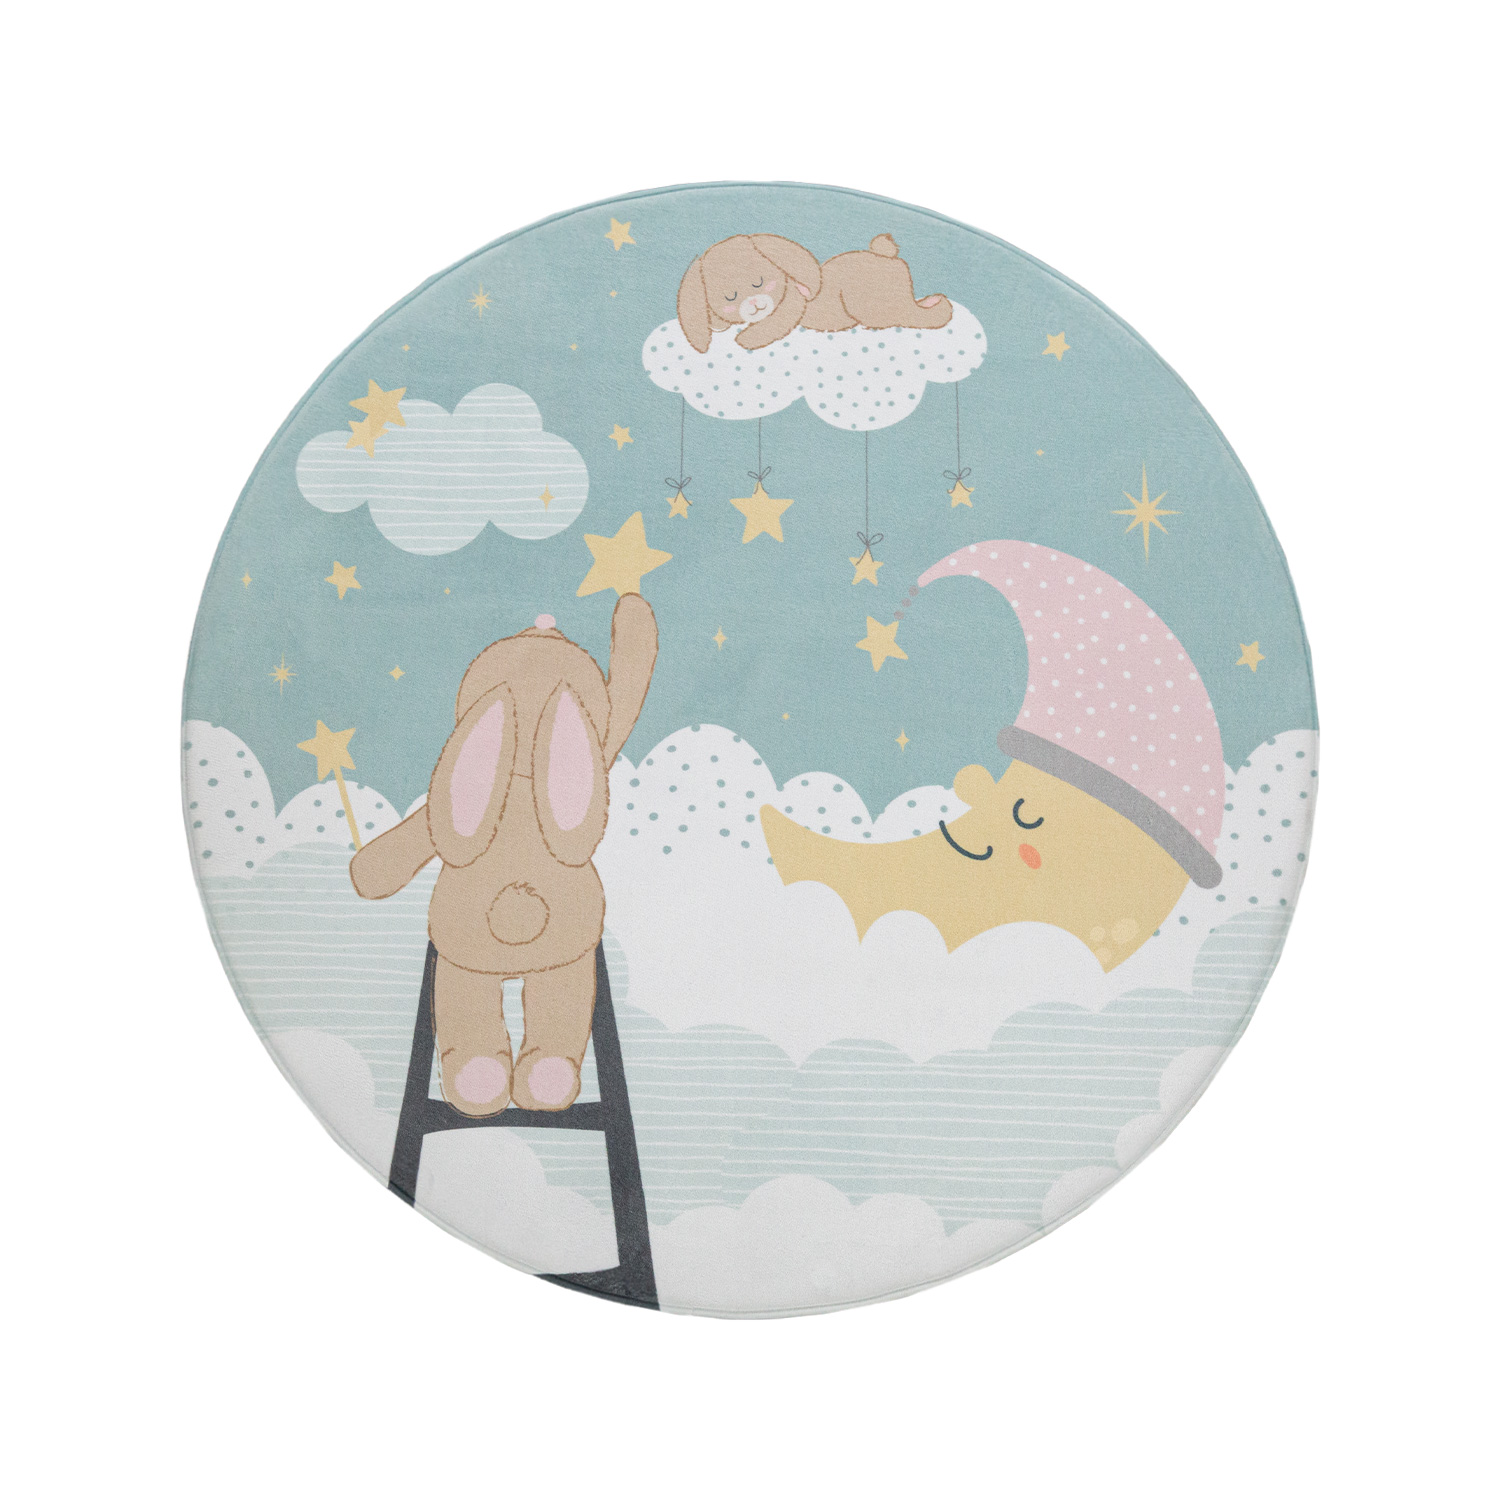 Spielteppich Kinderzimmer Wolken Sterne Mond Türkis Mit Motiv